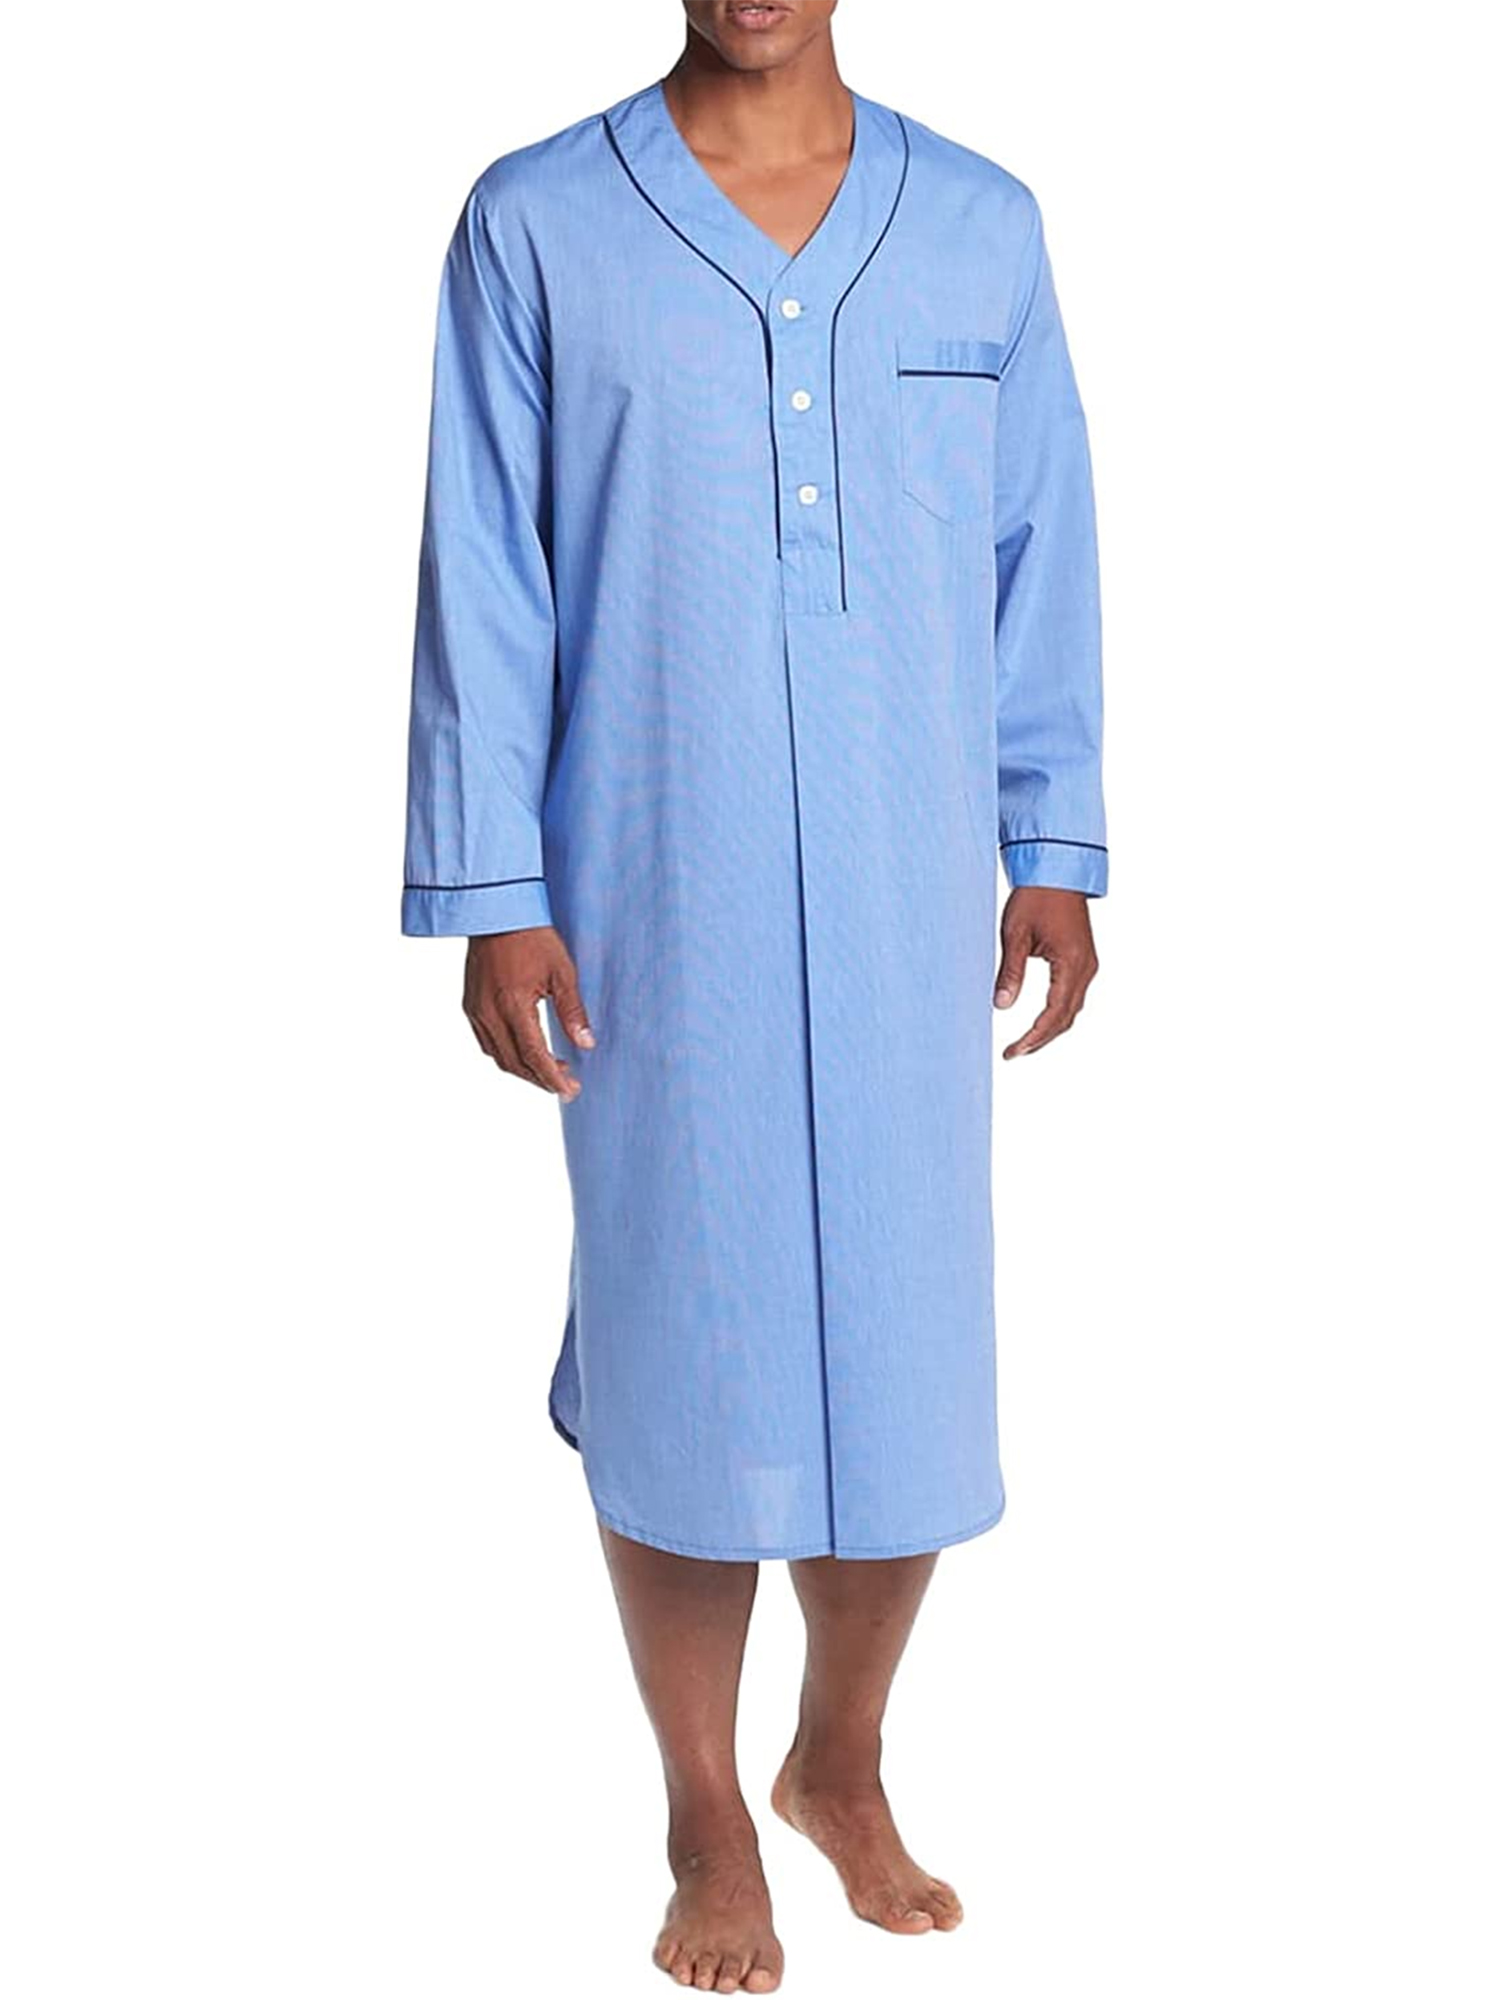 Mens Nightshirt Sleepwear Casual Long Sleeve V Neck Henley Sleep Shirt ...